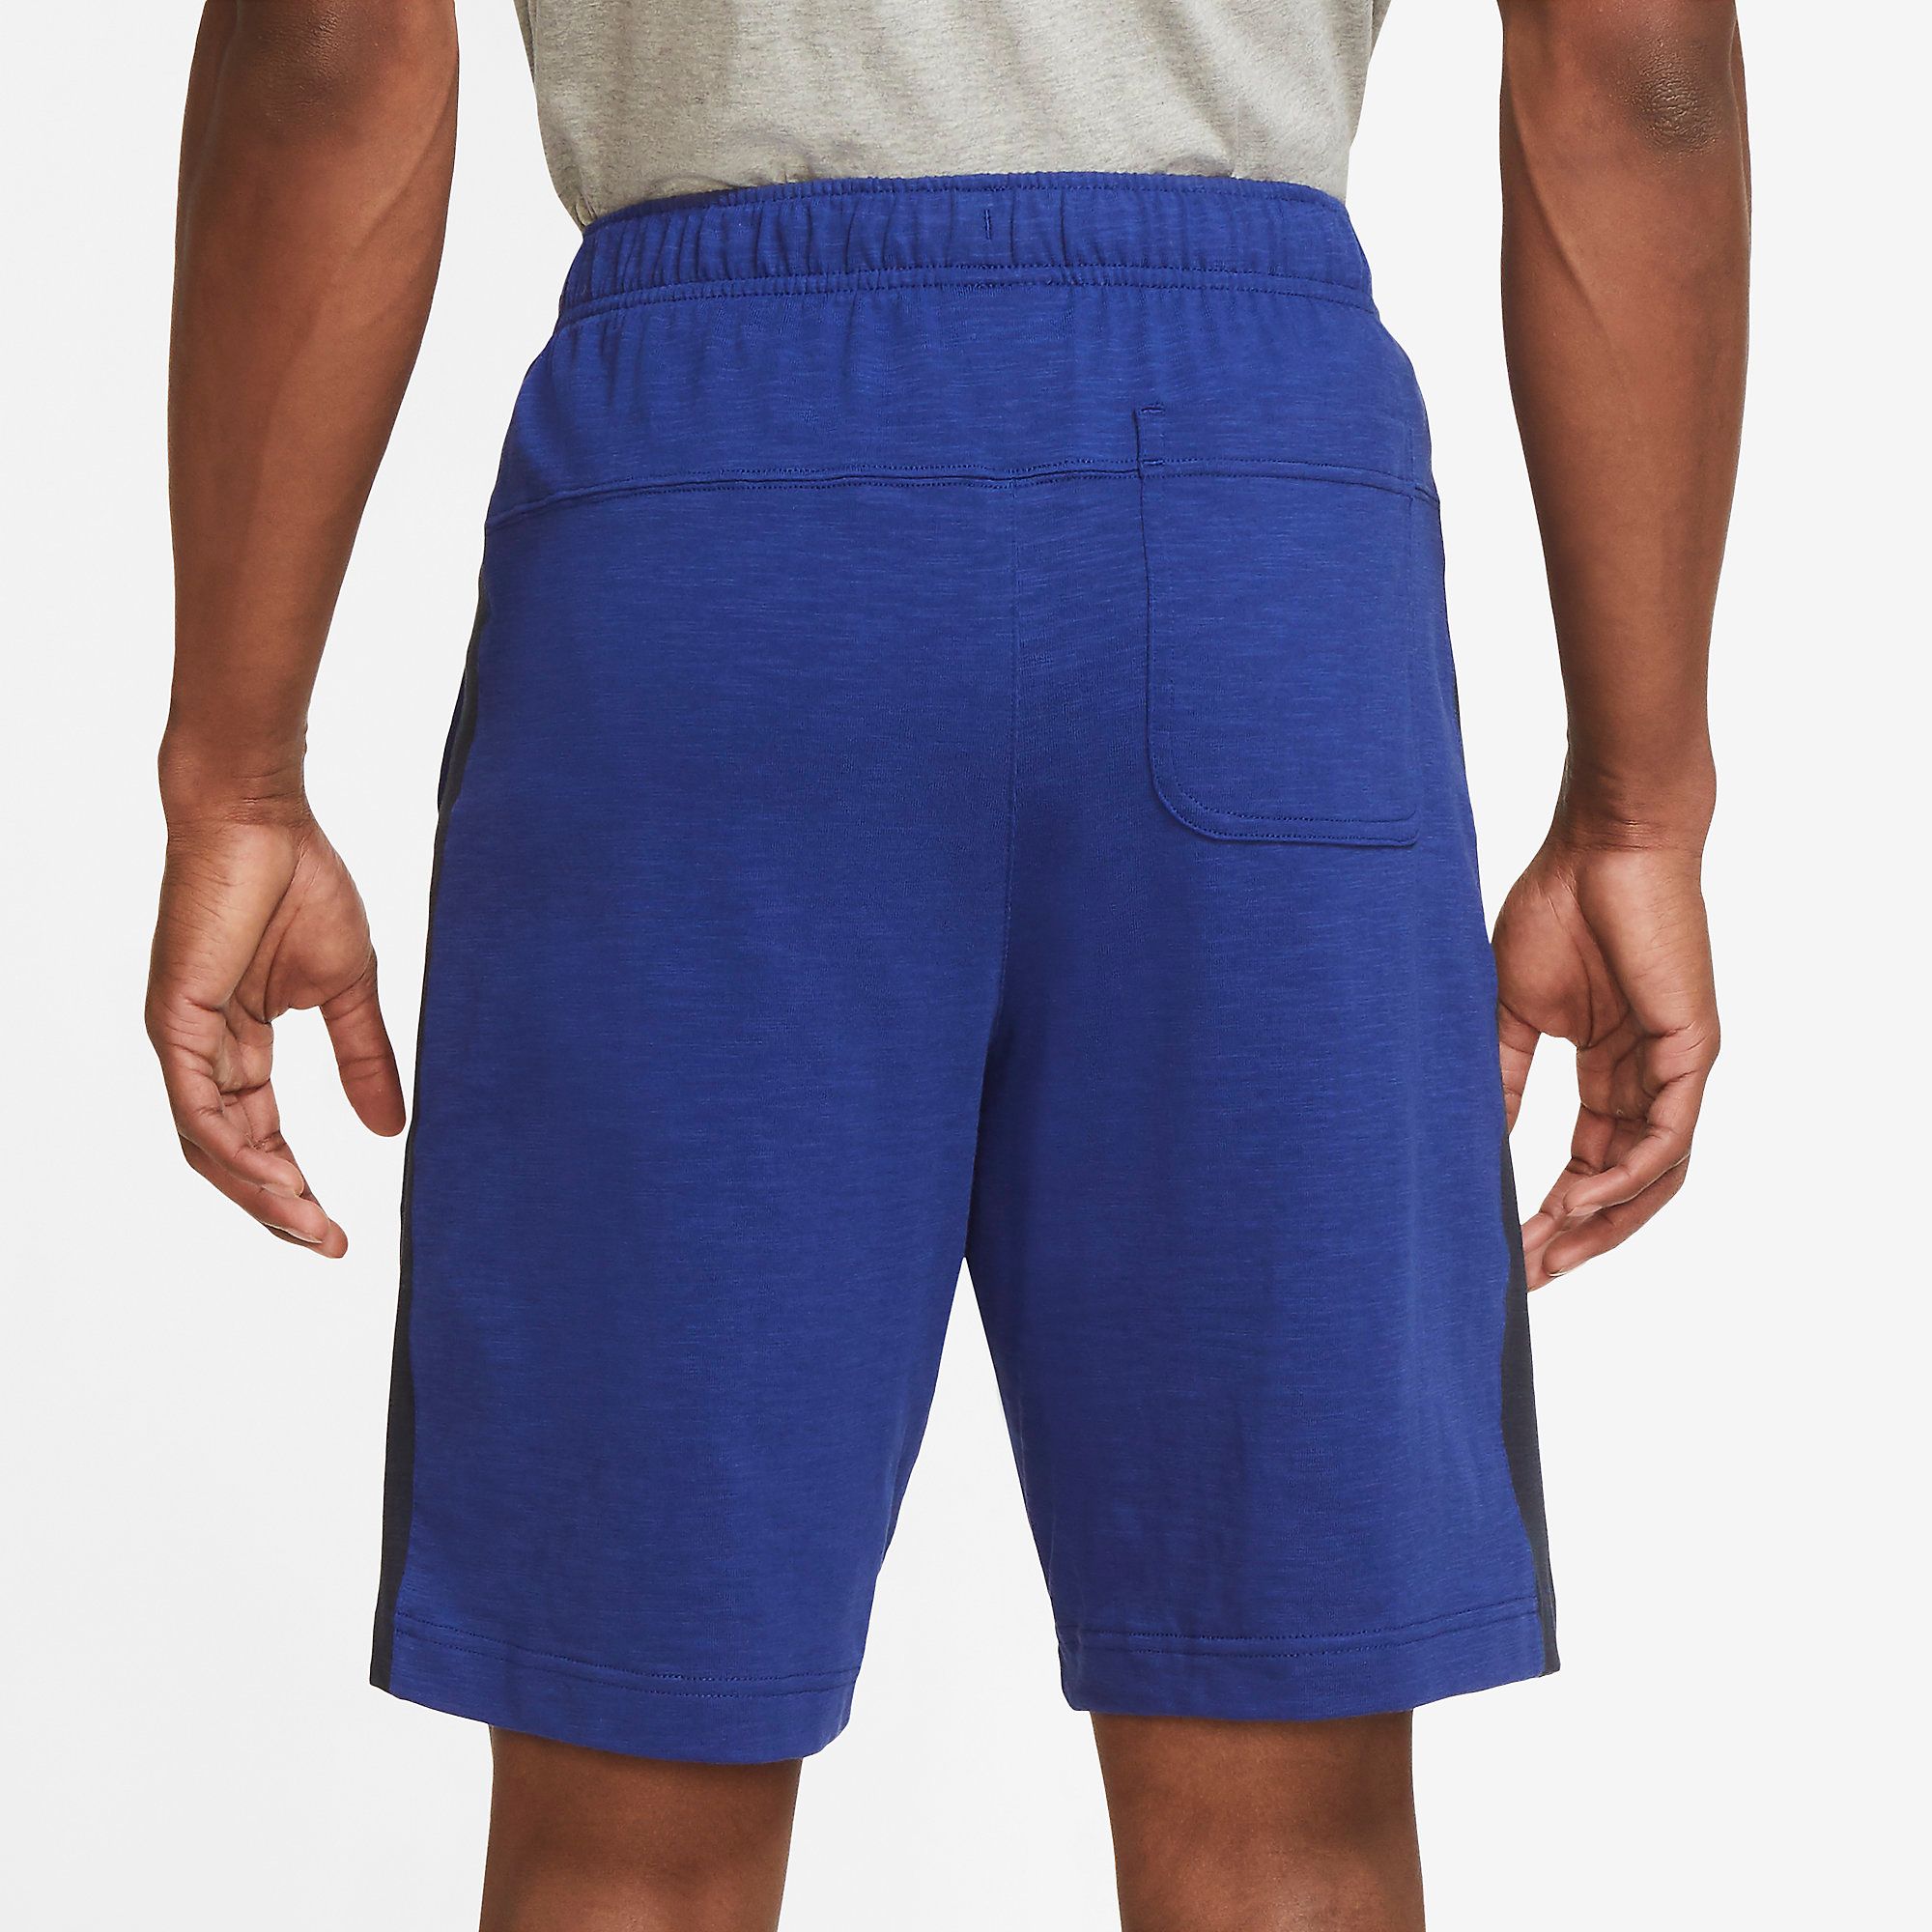  Nike Sportswear Fleece Shorts - Blue 